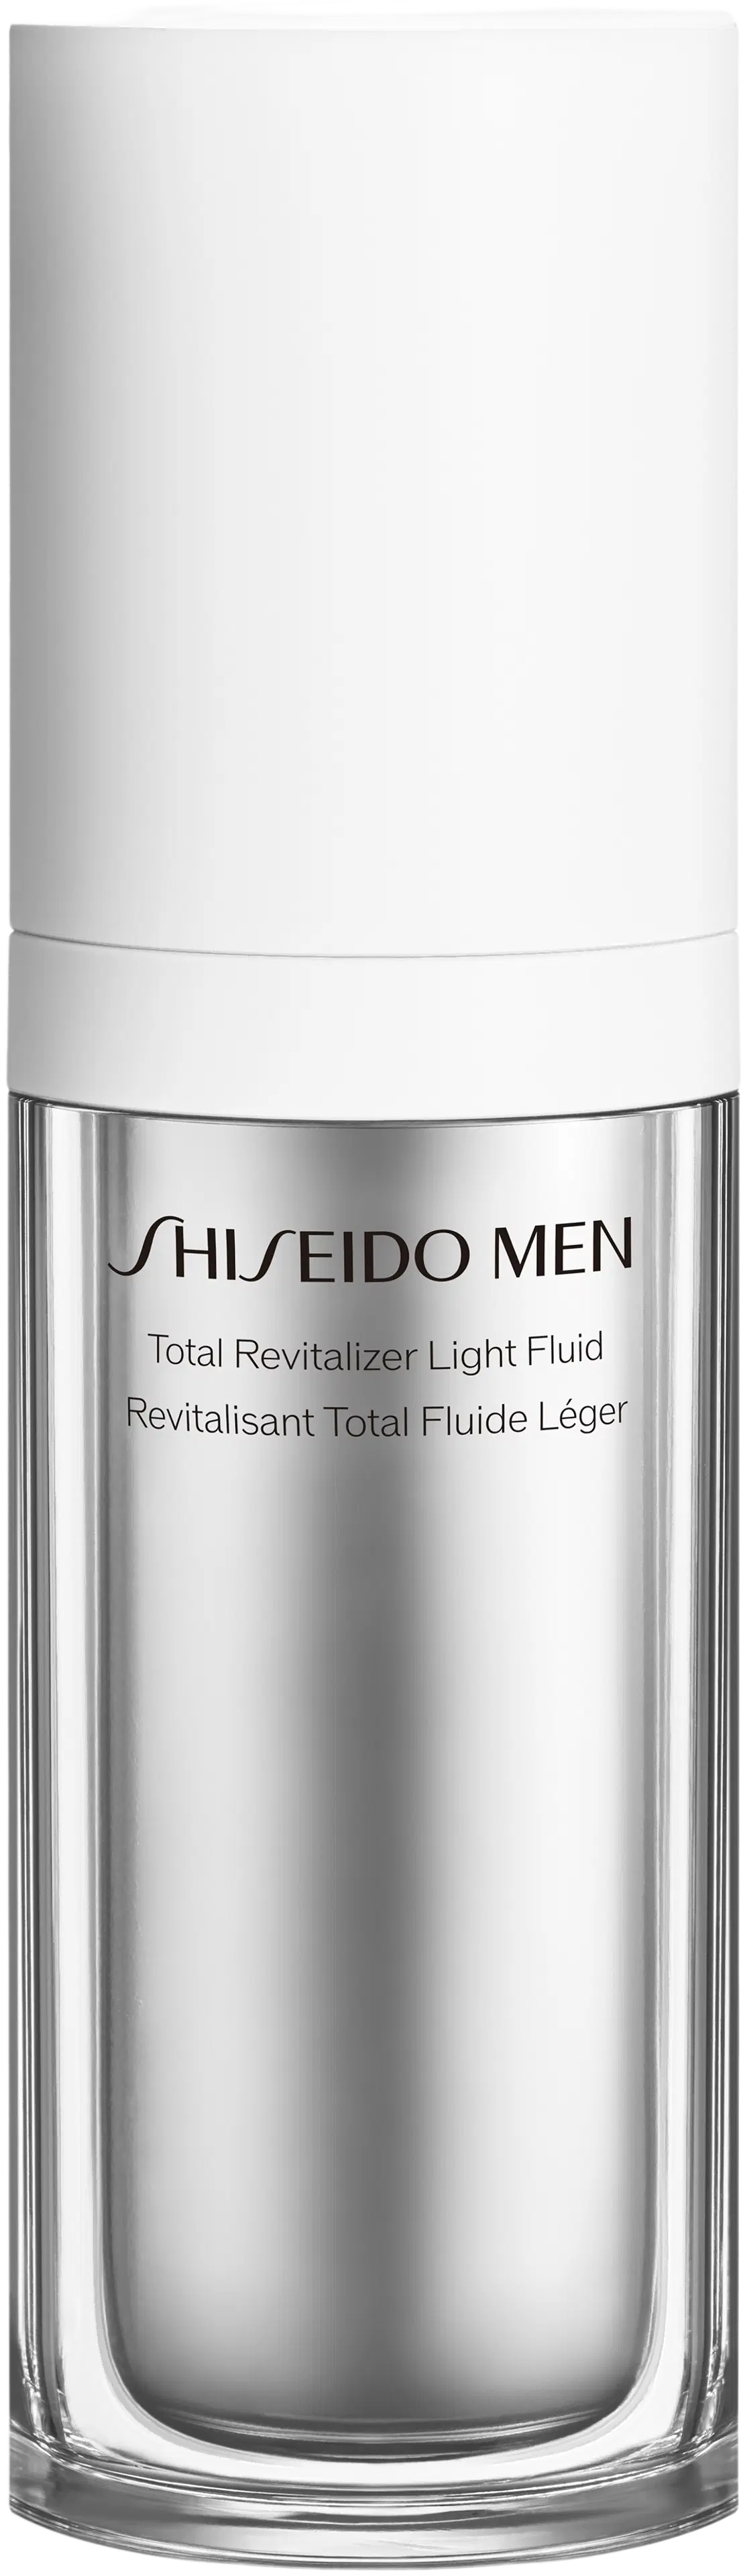 Shiseido Total Revitalizer Light Fluid kasvoemulsio 70 ml